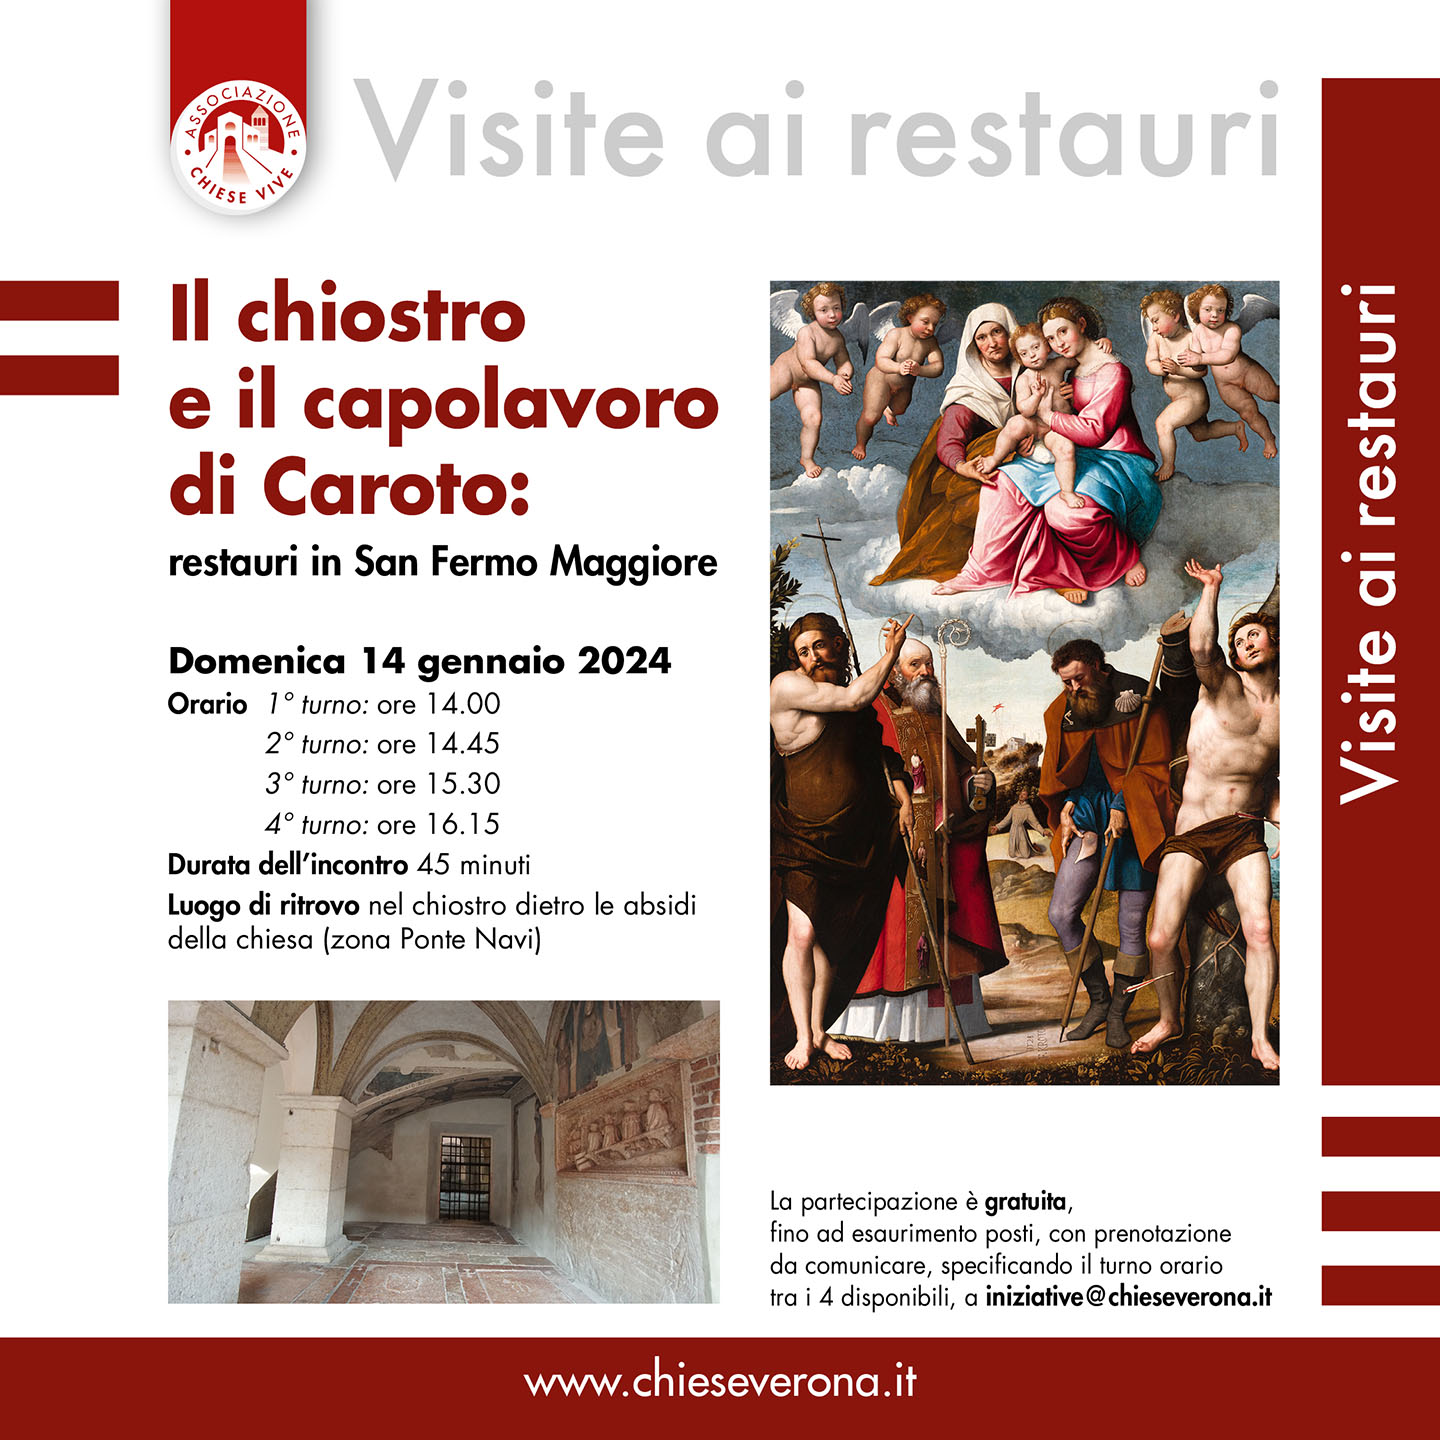 Il chiostro e il capolavoro di Caroto: restauri in San Fermo Maggiore - Chiese Vive - Chiese Verona